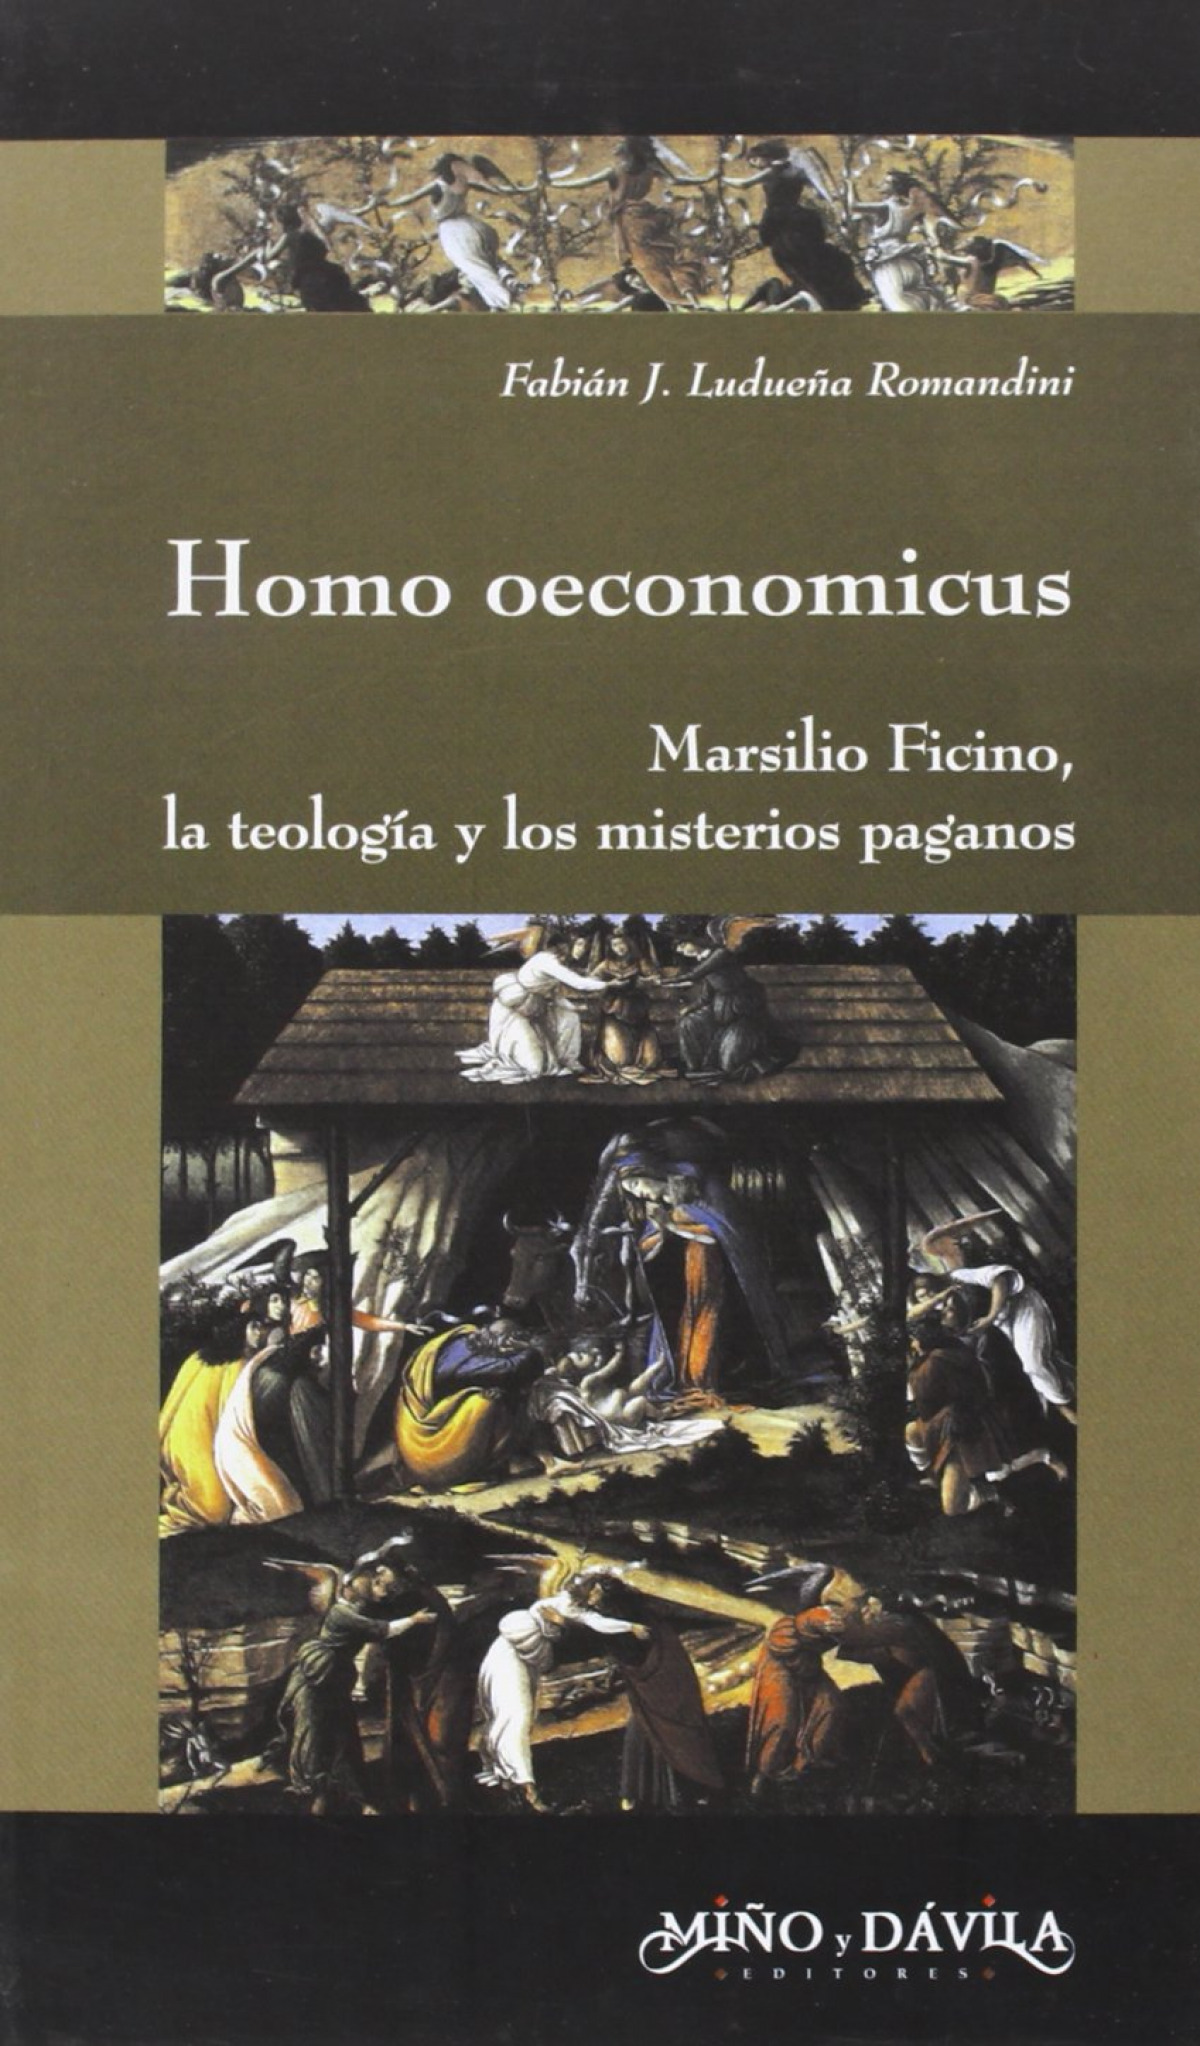 Homo oeconomicus - Fabian J.LudueÑa